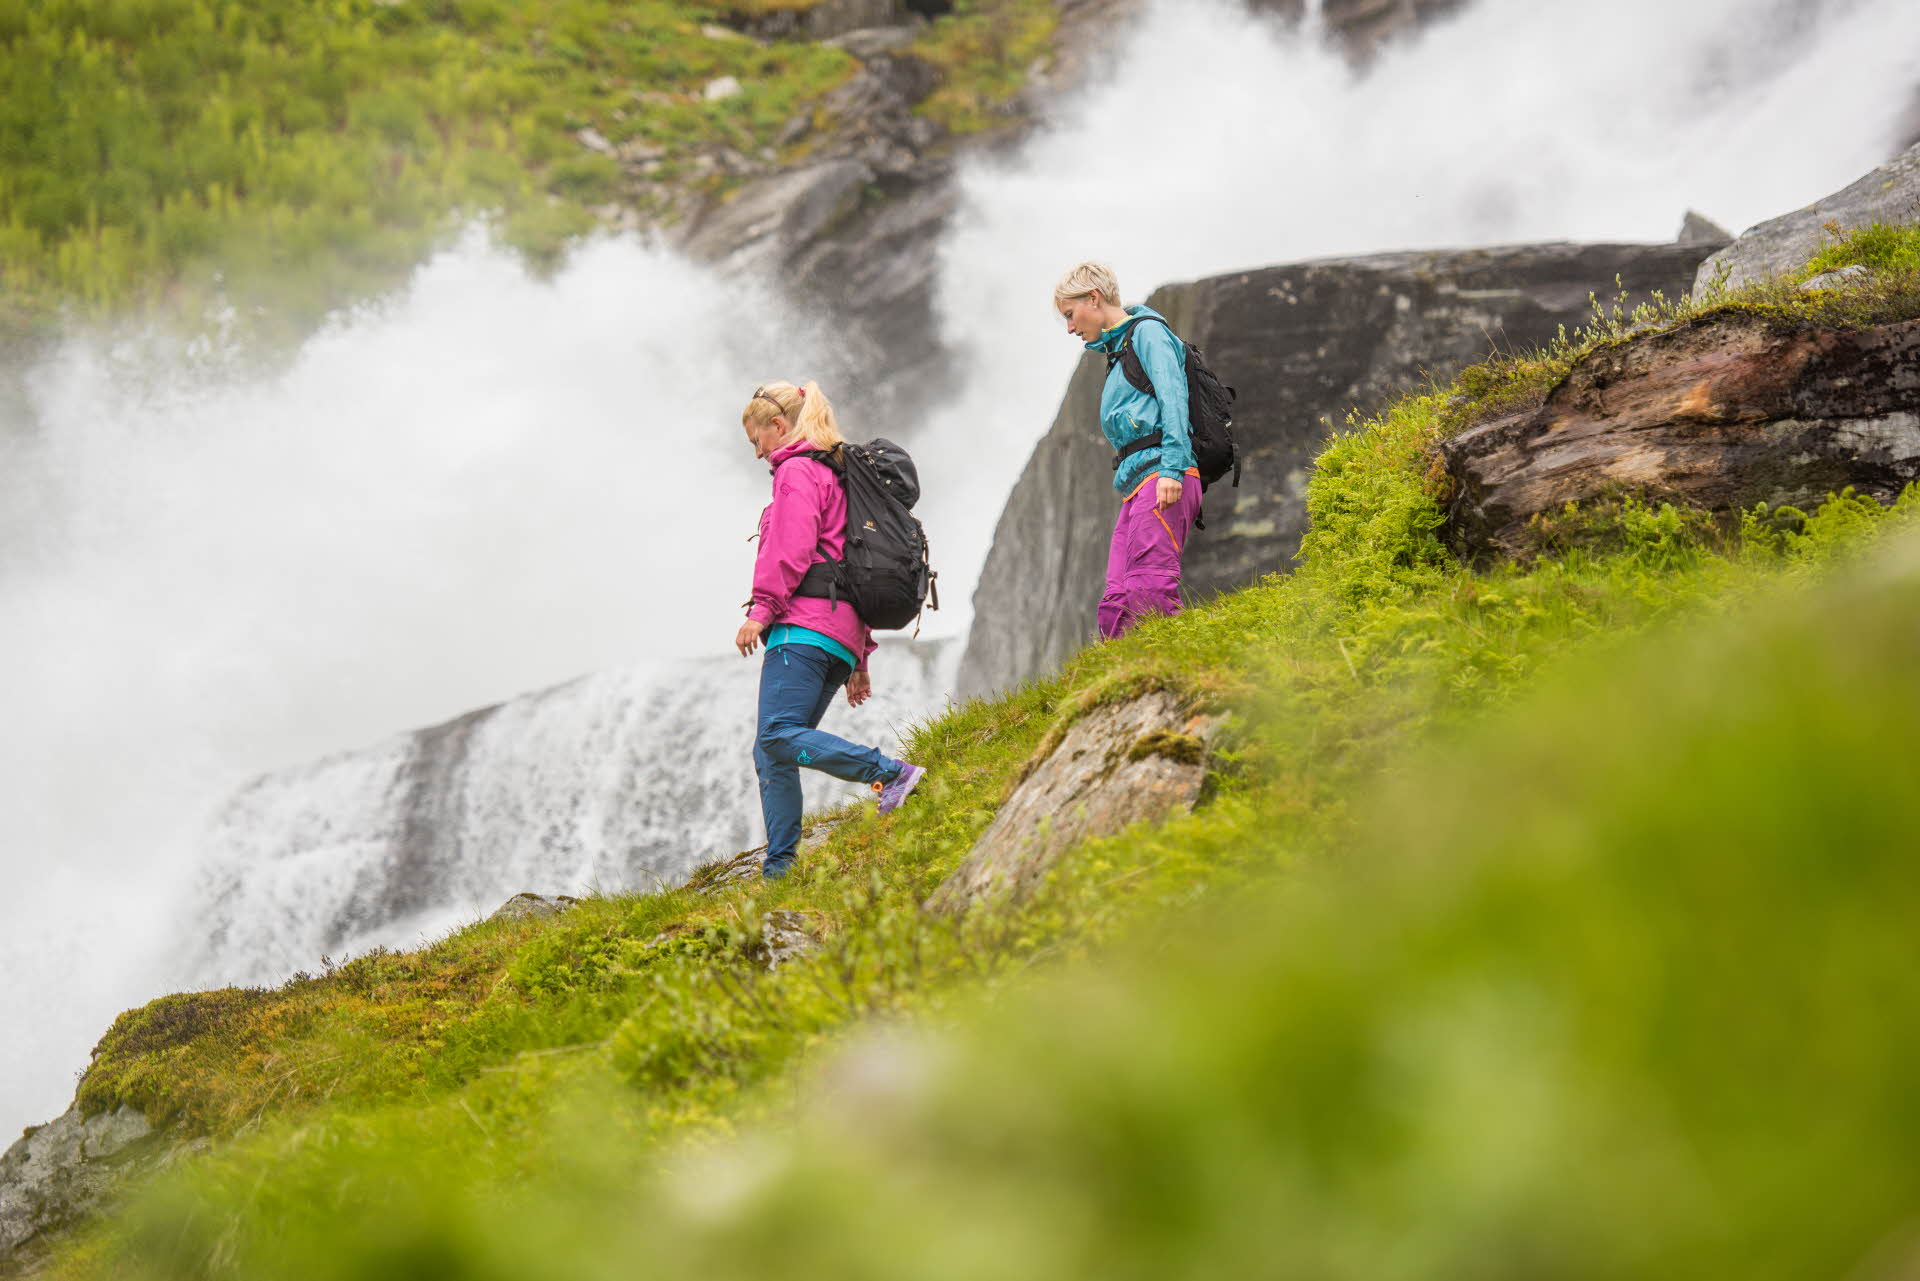 ヴィカフジェルの滝に沿って歩いている2人の女性